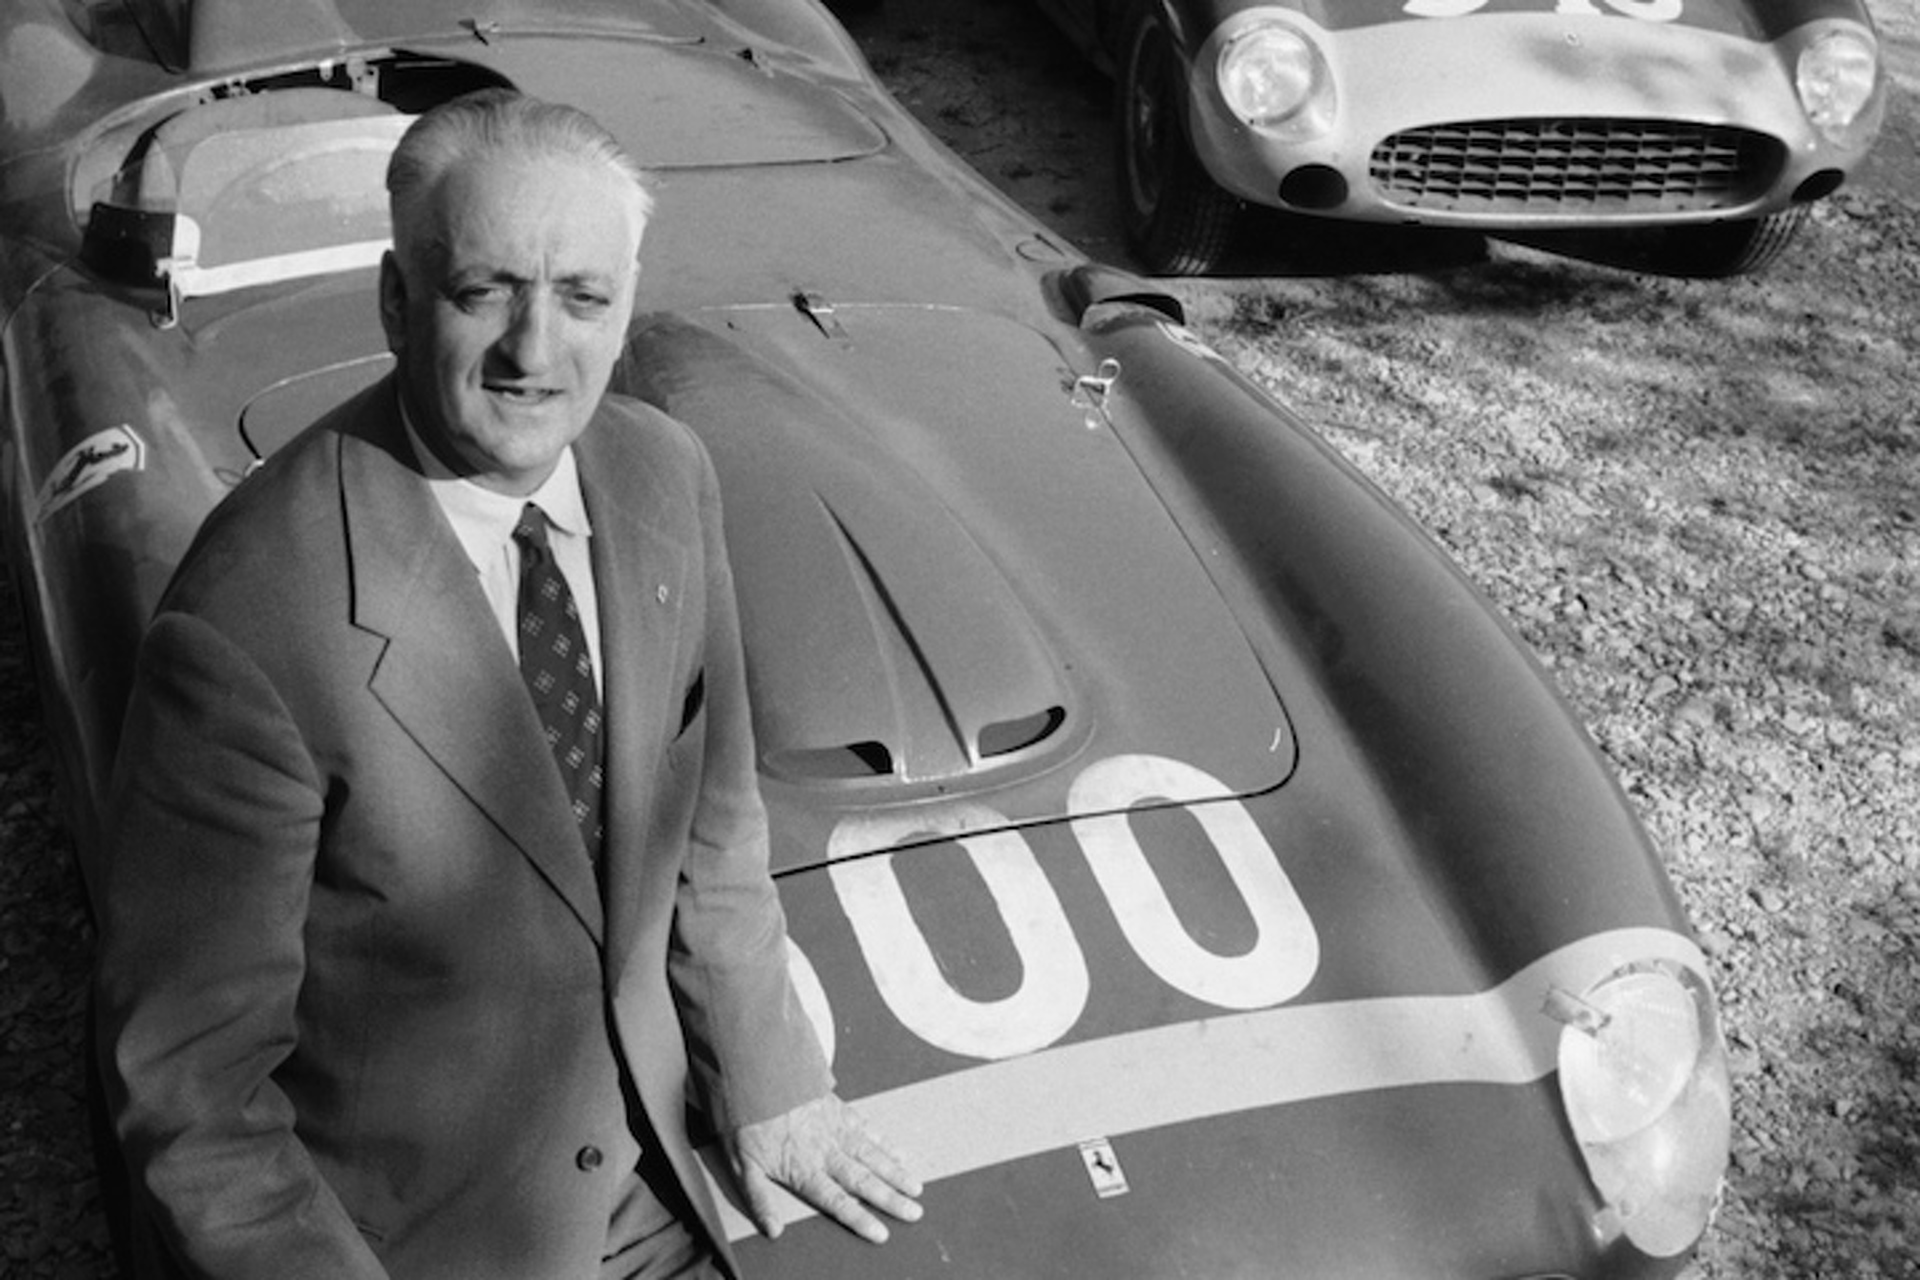 เปิดประวัติ Ferrari ที่มาของคำว่า ม้าลำพอง เอ็นโซ เฟอร์รารี (Enzo Ferrari)